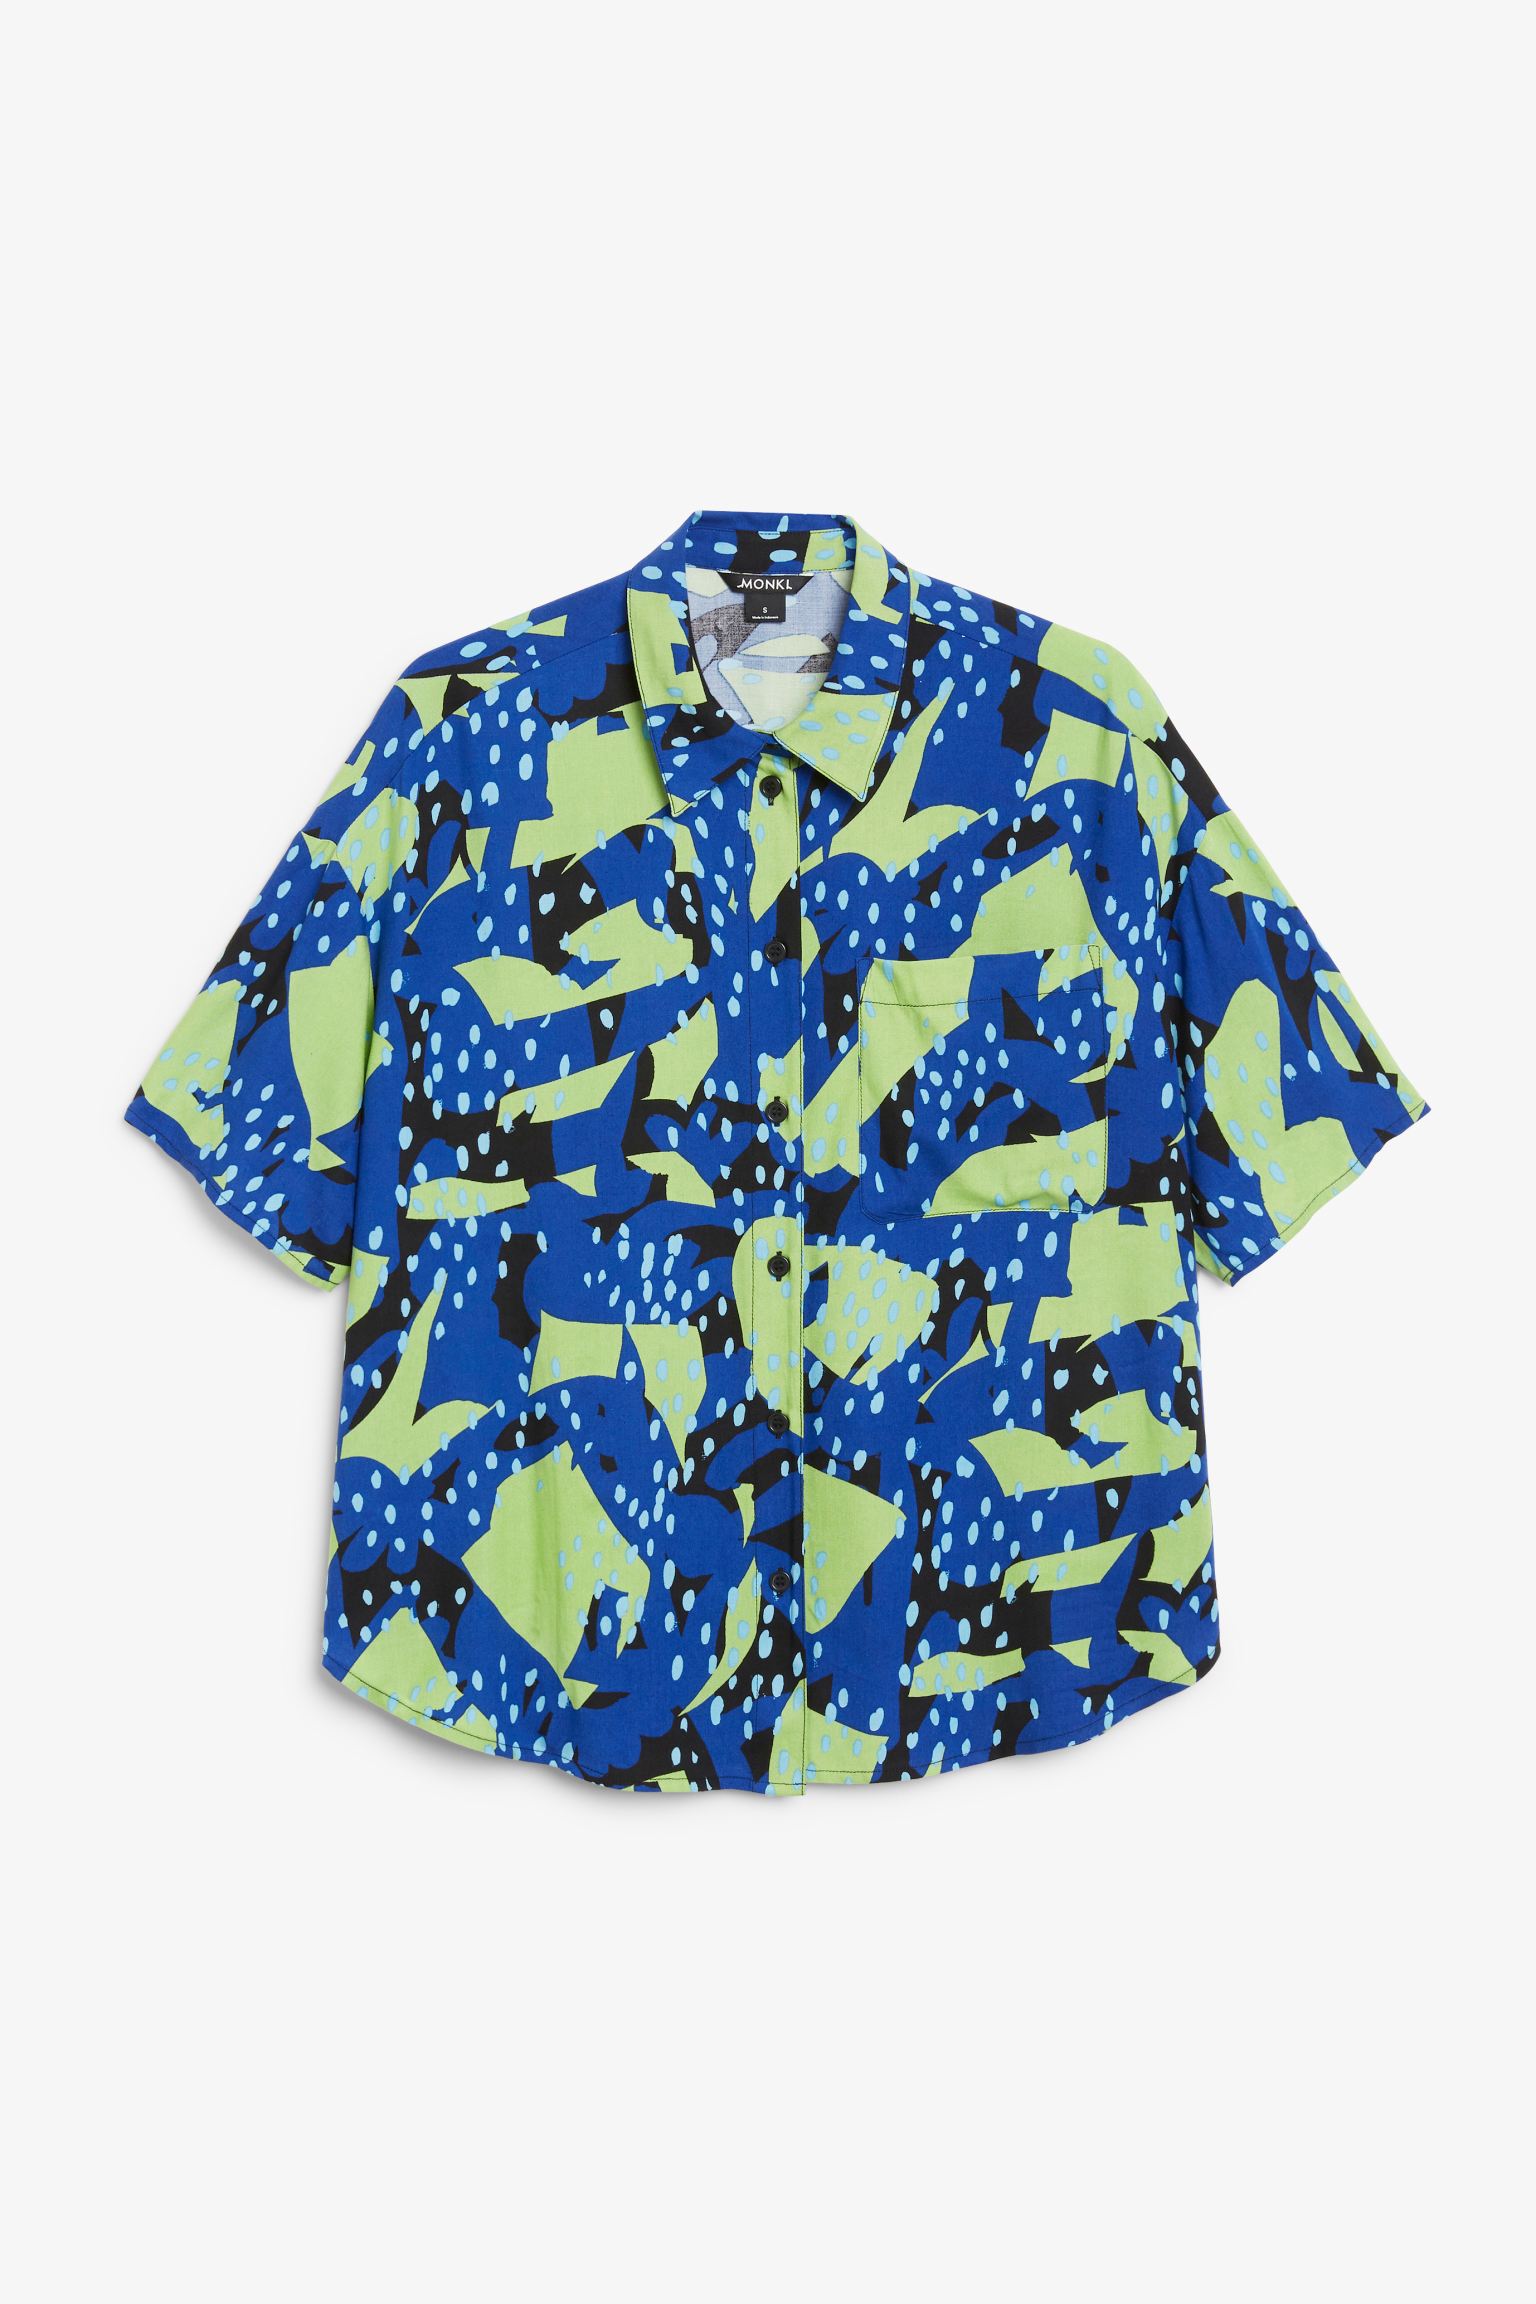 Рубашка женская Monki 972319020 синяя 2XL (доставка из-за рубежа)